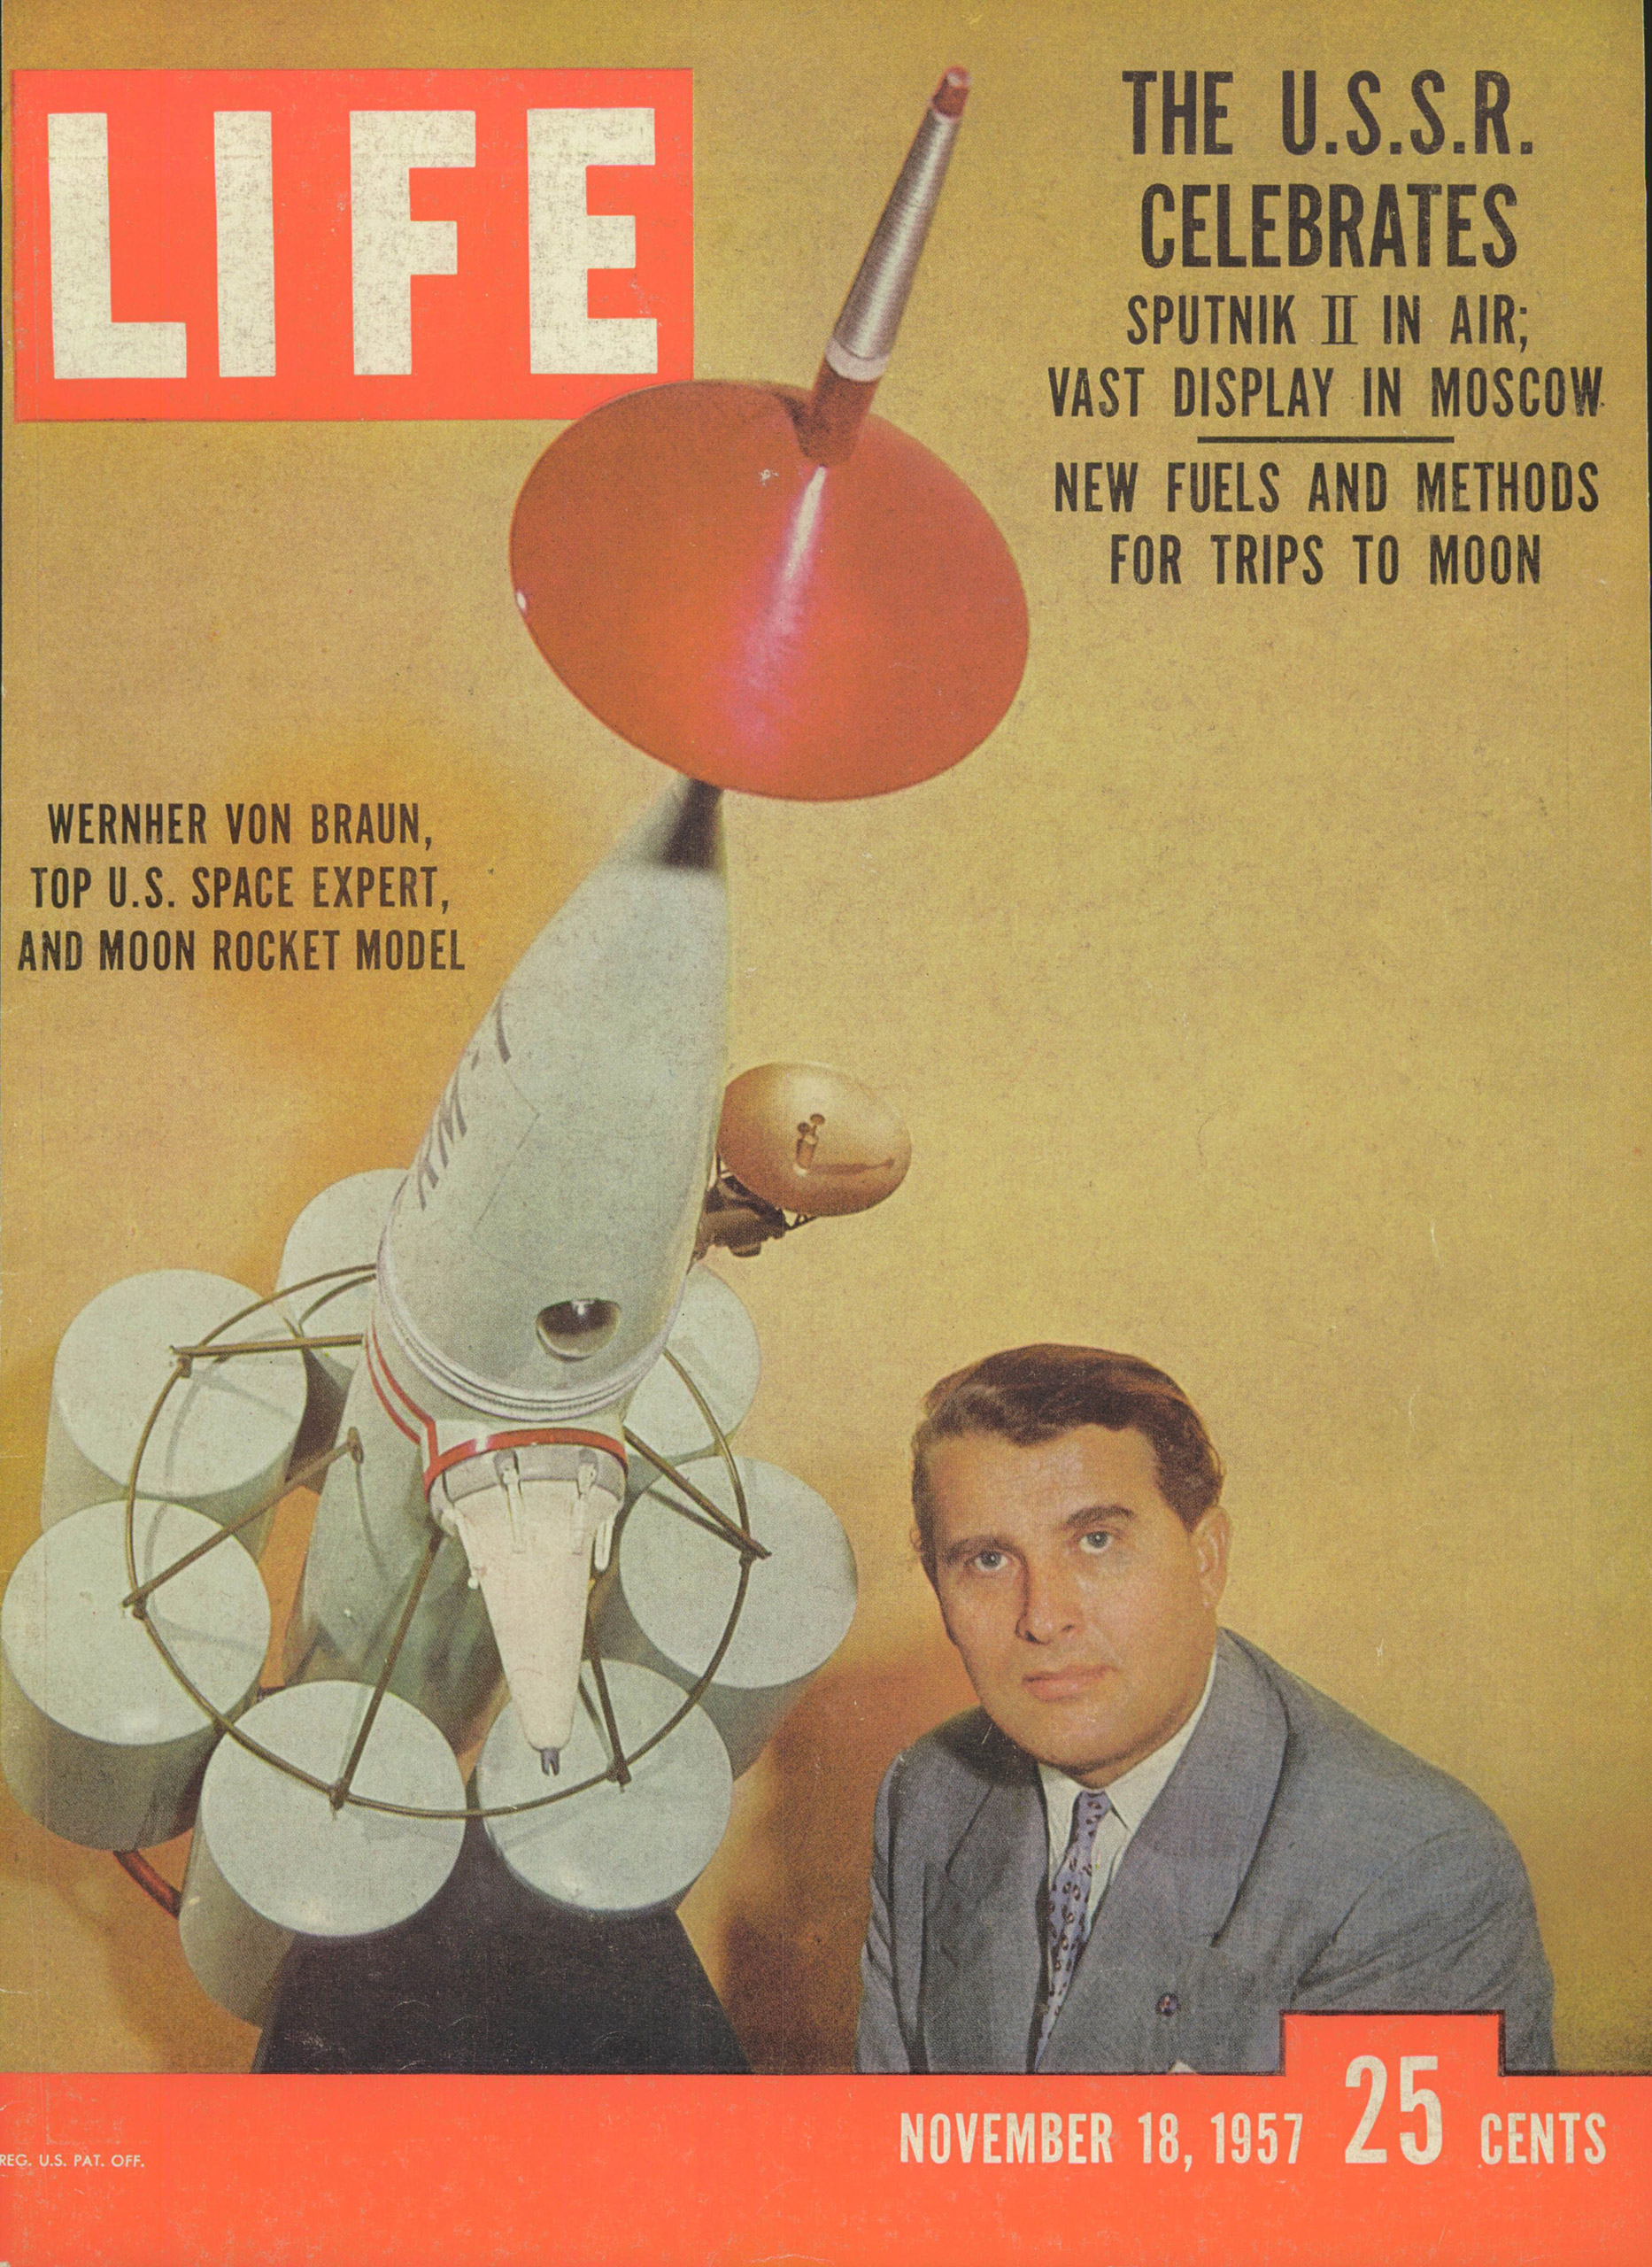 Nov. 18, 1957 cover of LIFE magazine.